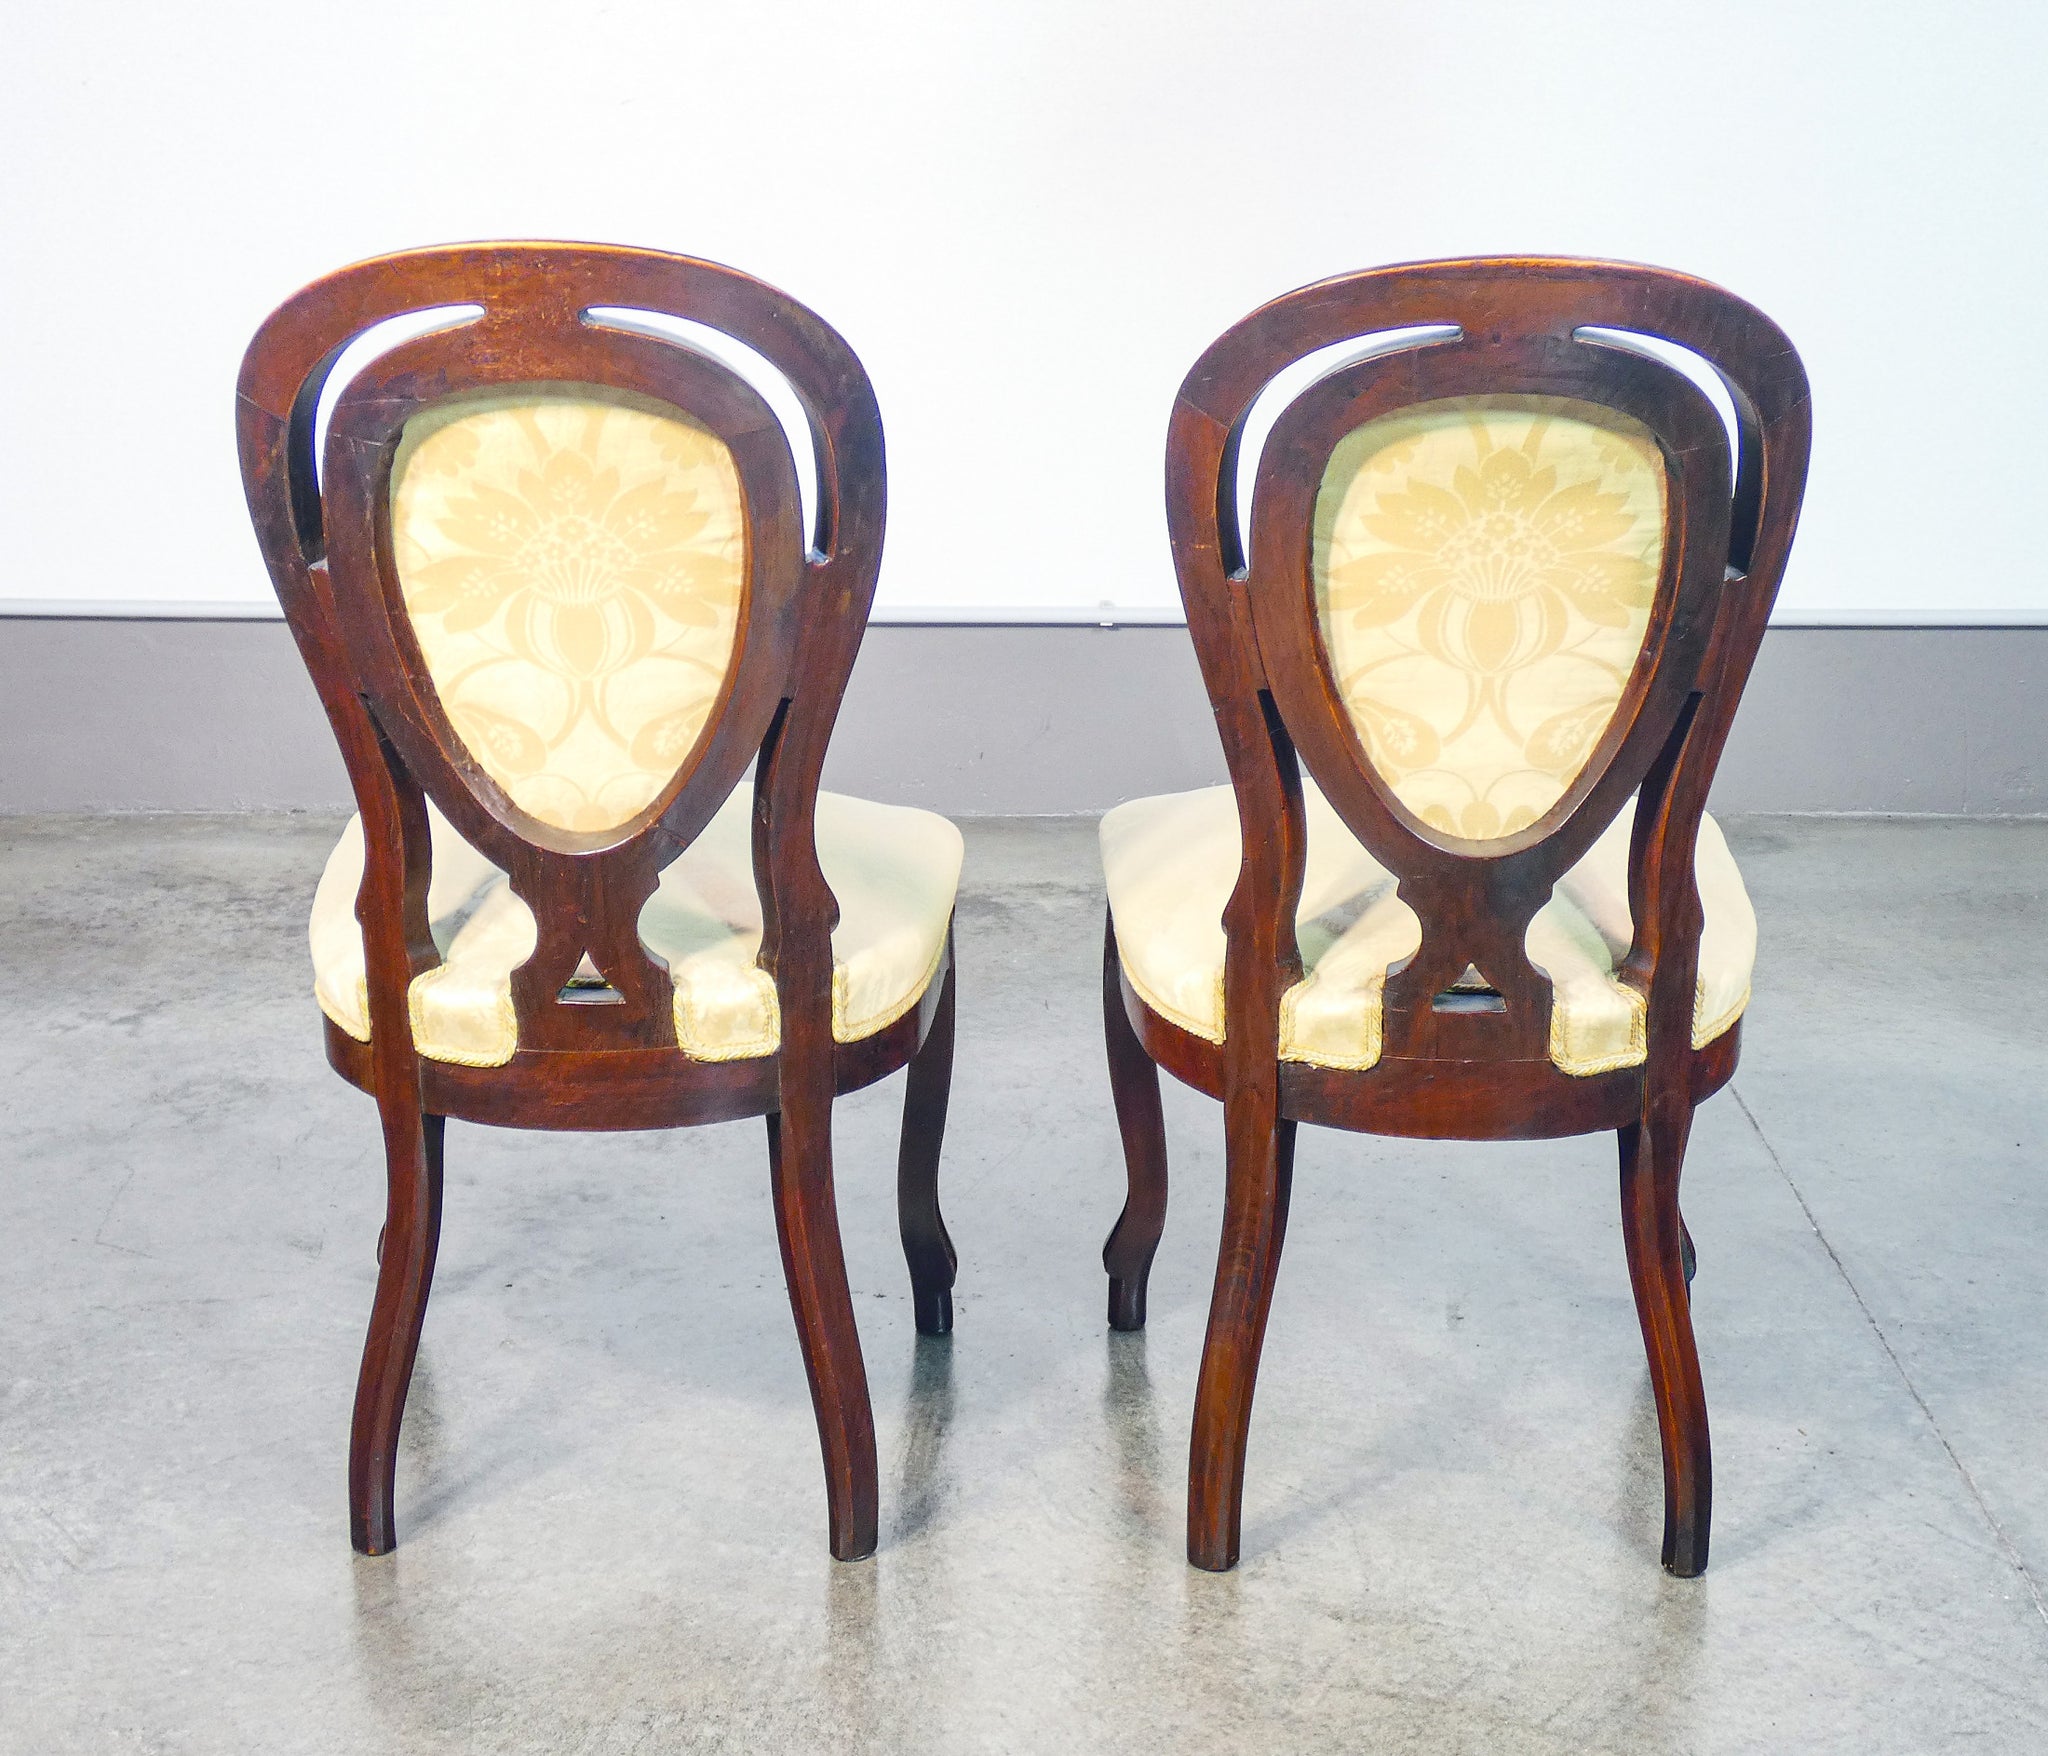 coppia sedie luigi filippo epoca 1800 legno noce massello scolpito poltrona